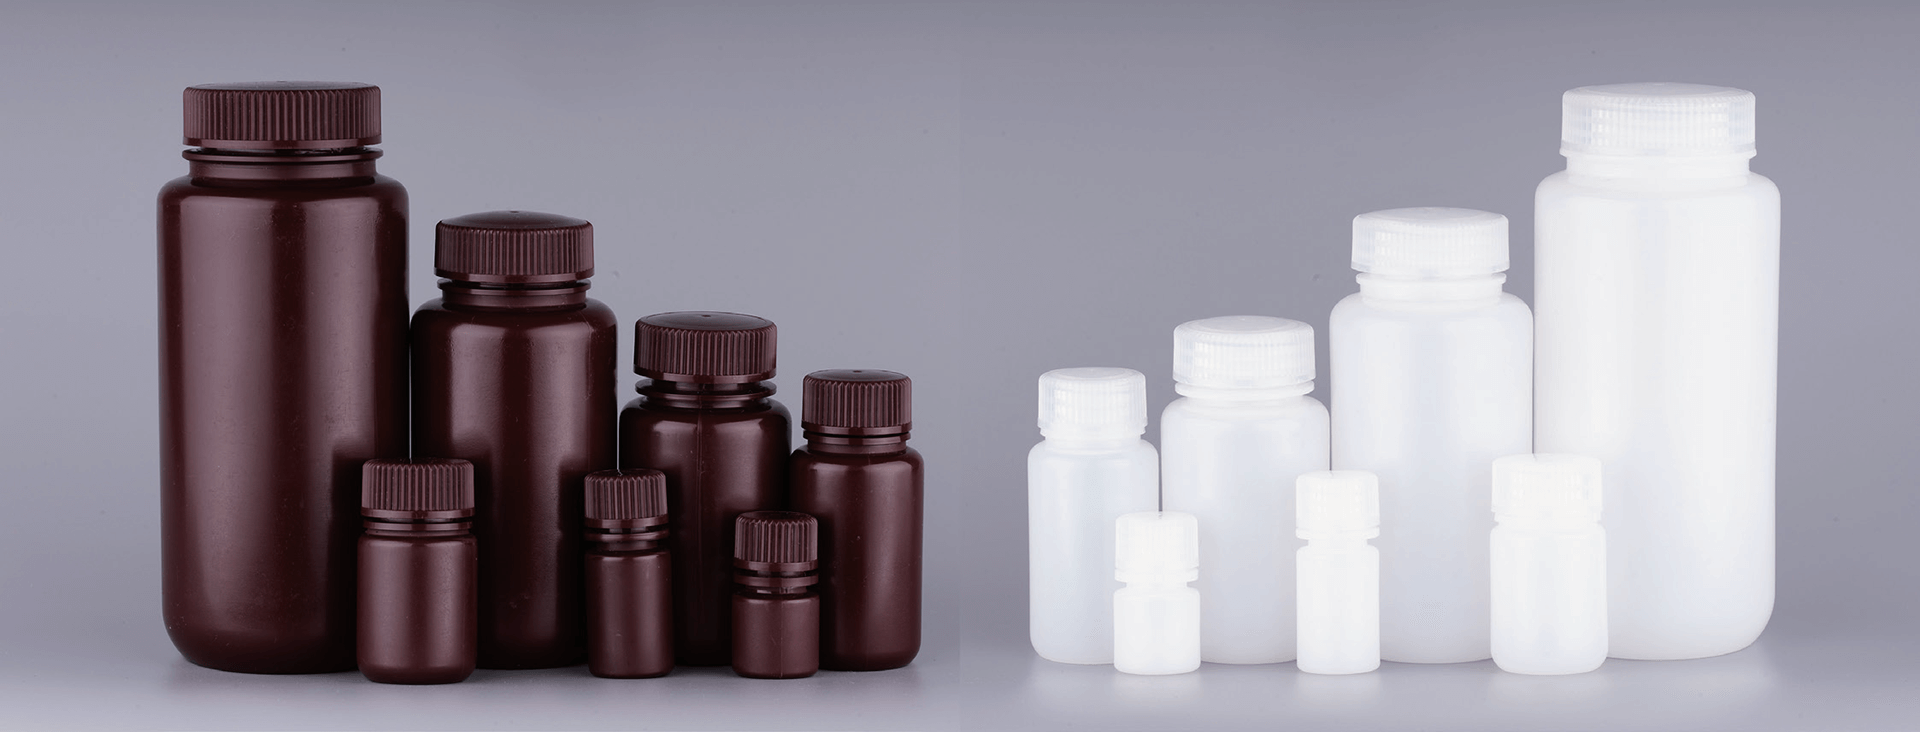 सूज़ौ ऐस बायोमेडिकल की उच्च गुणवत्ता वाली प्लास्टिक अभिकर्मक बोतलें